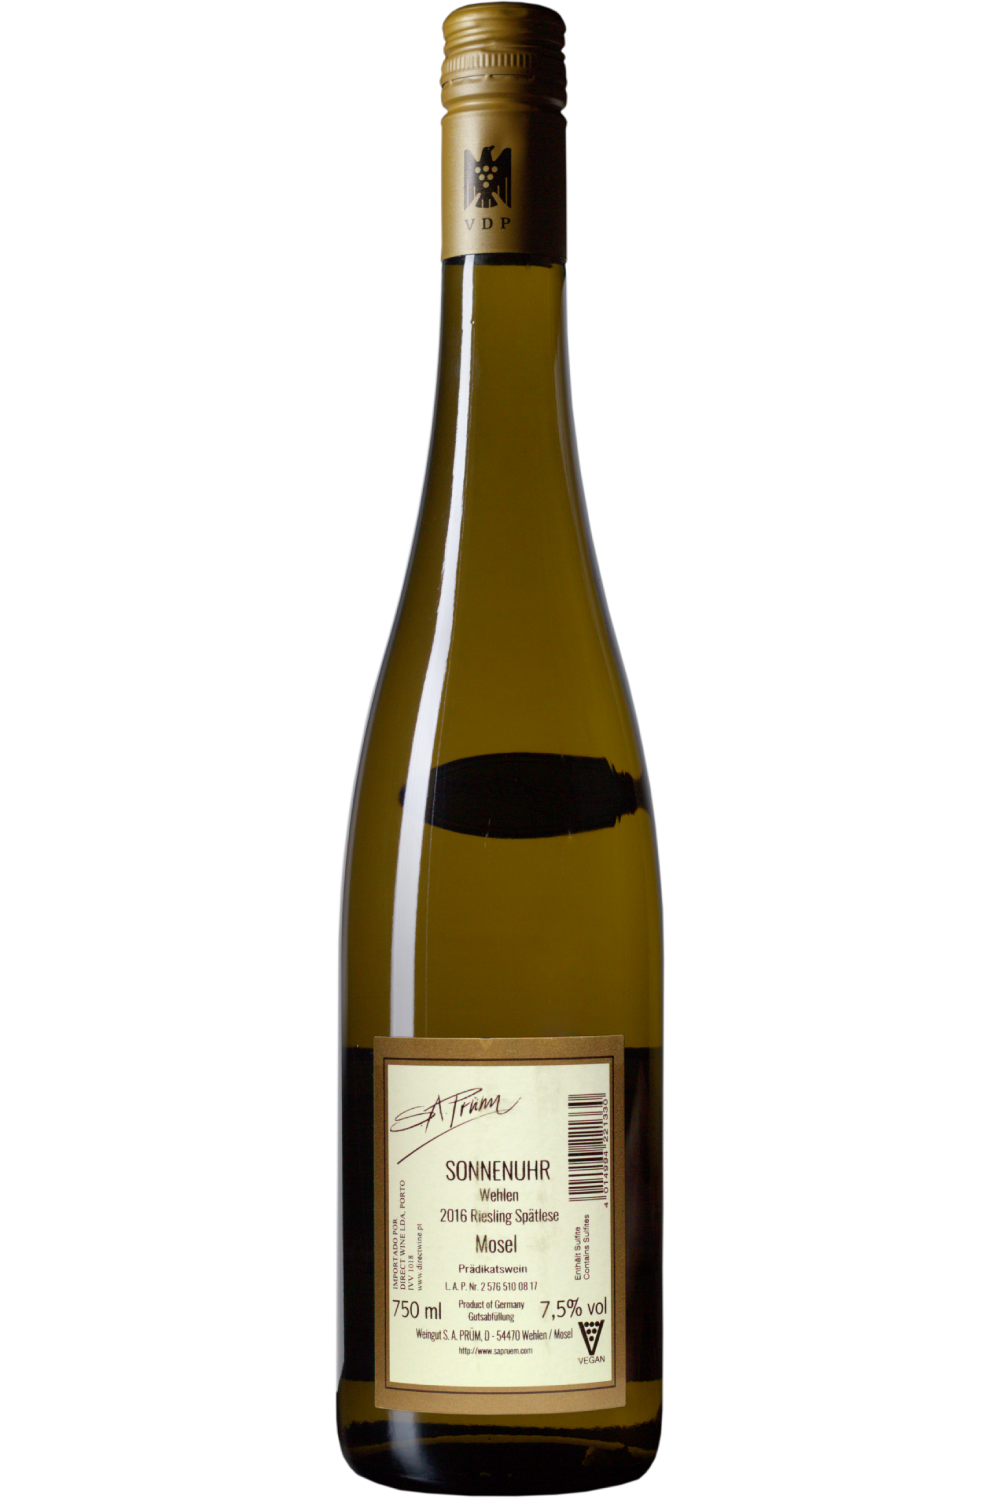 WineVins Sa Prum Wehlen Sonnenuhr Riesling Spatlese Branco 2016